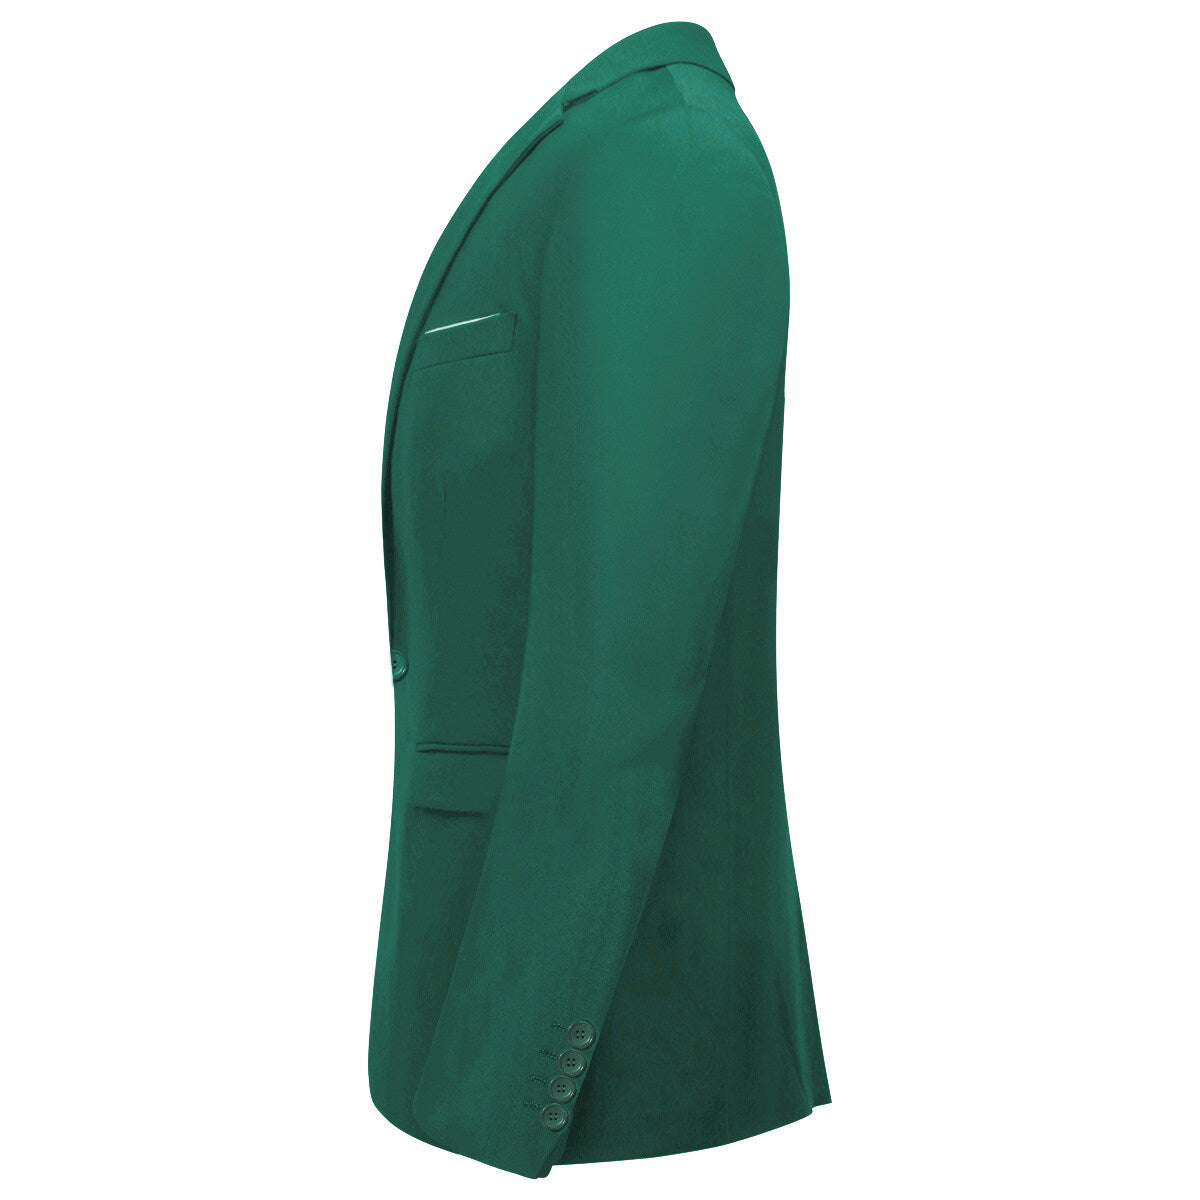 Green 3-Piece Slim Fit Suit